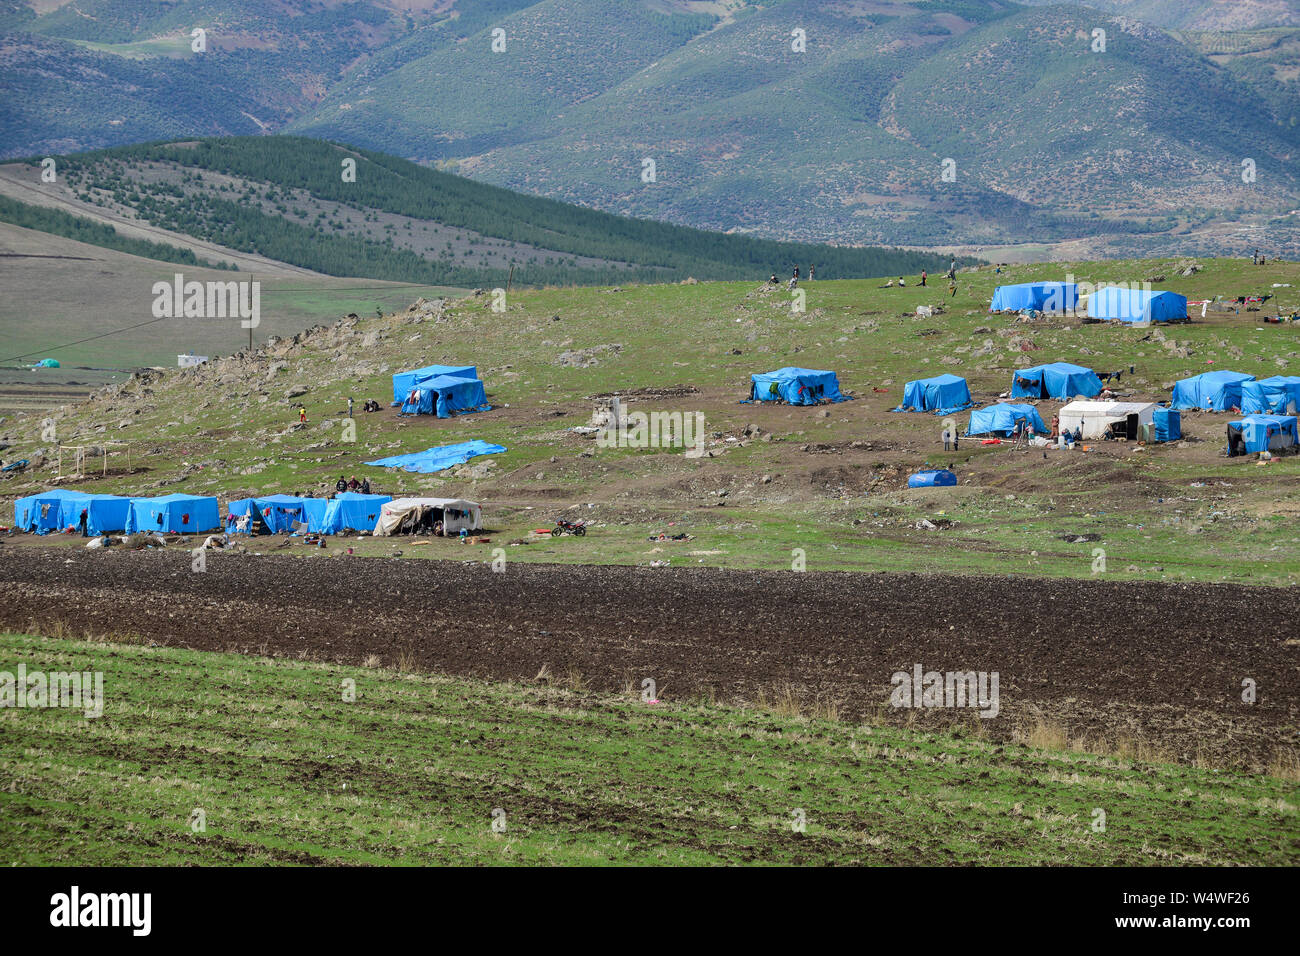 La Turquie, près de la frontière syrienne, les réfugiés syriens, camp de réfugiés inofficiel Banque D'Images